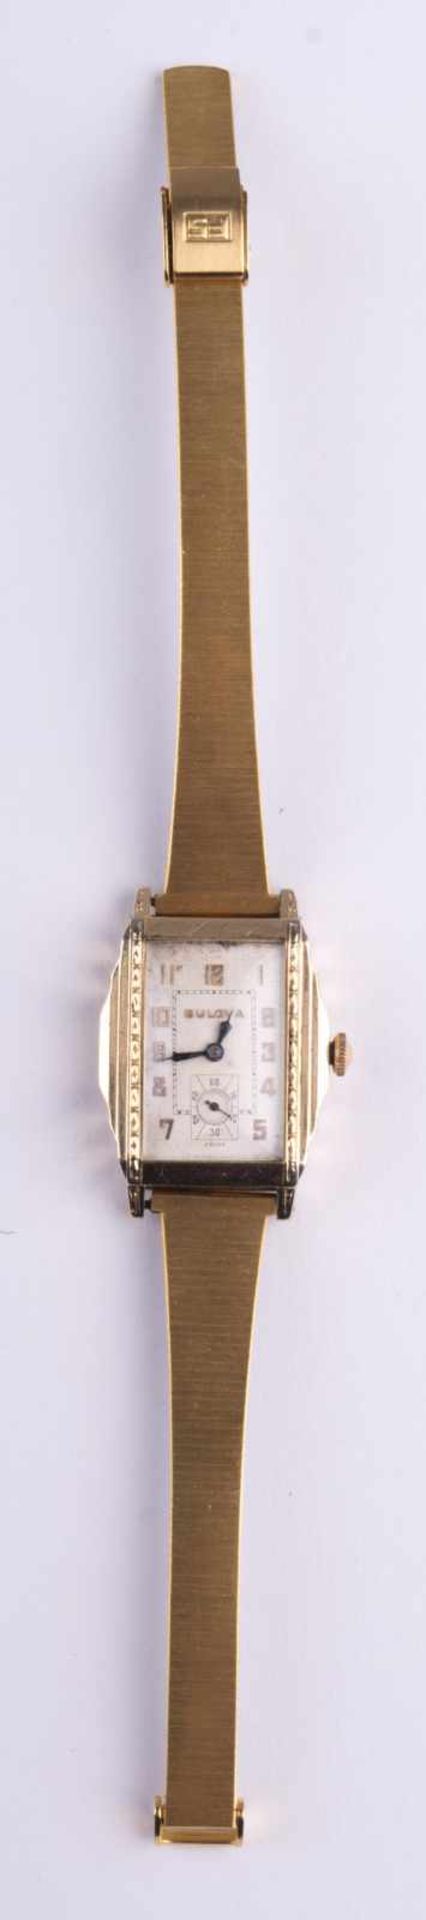 Herren Uhr Bulova um 1935 / Men´s watch, Bulova about 1935 im Scharniergehäuse Goldfild, rundes - Image 2 of 6